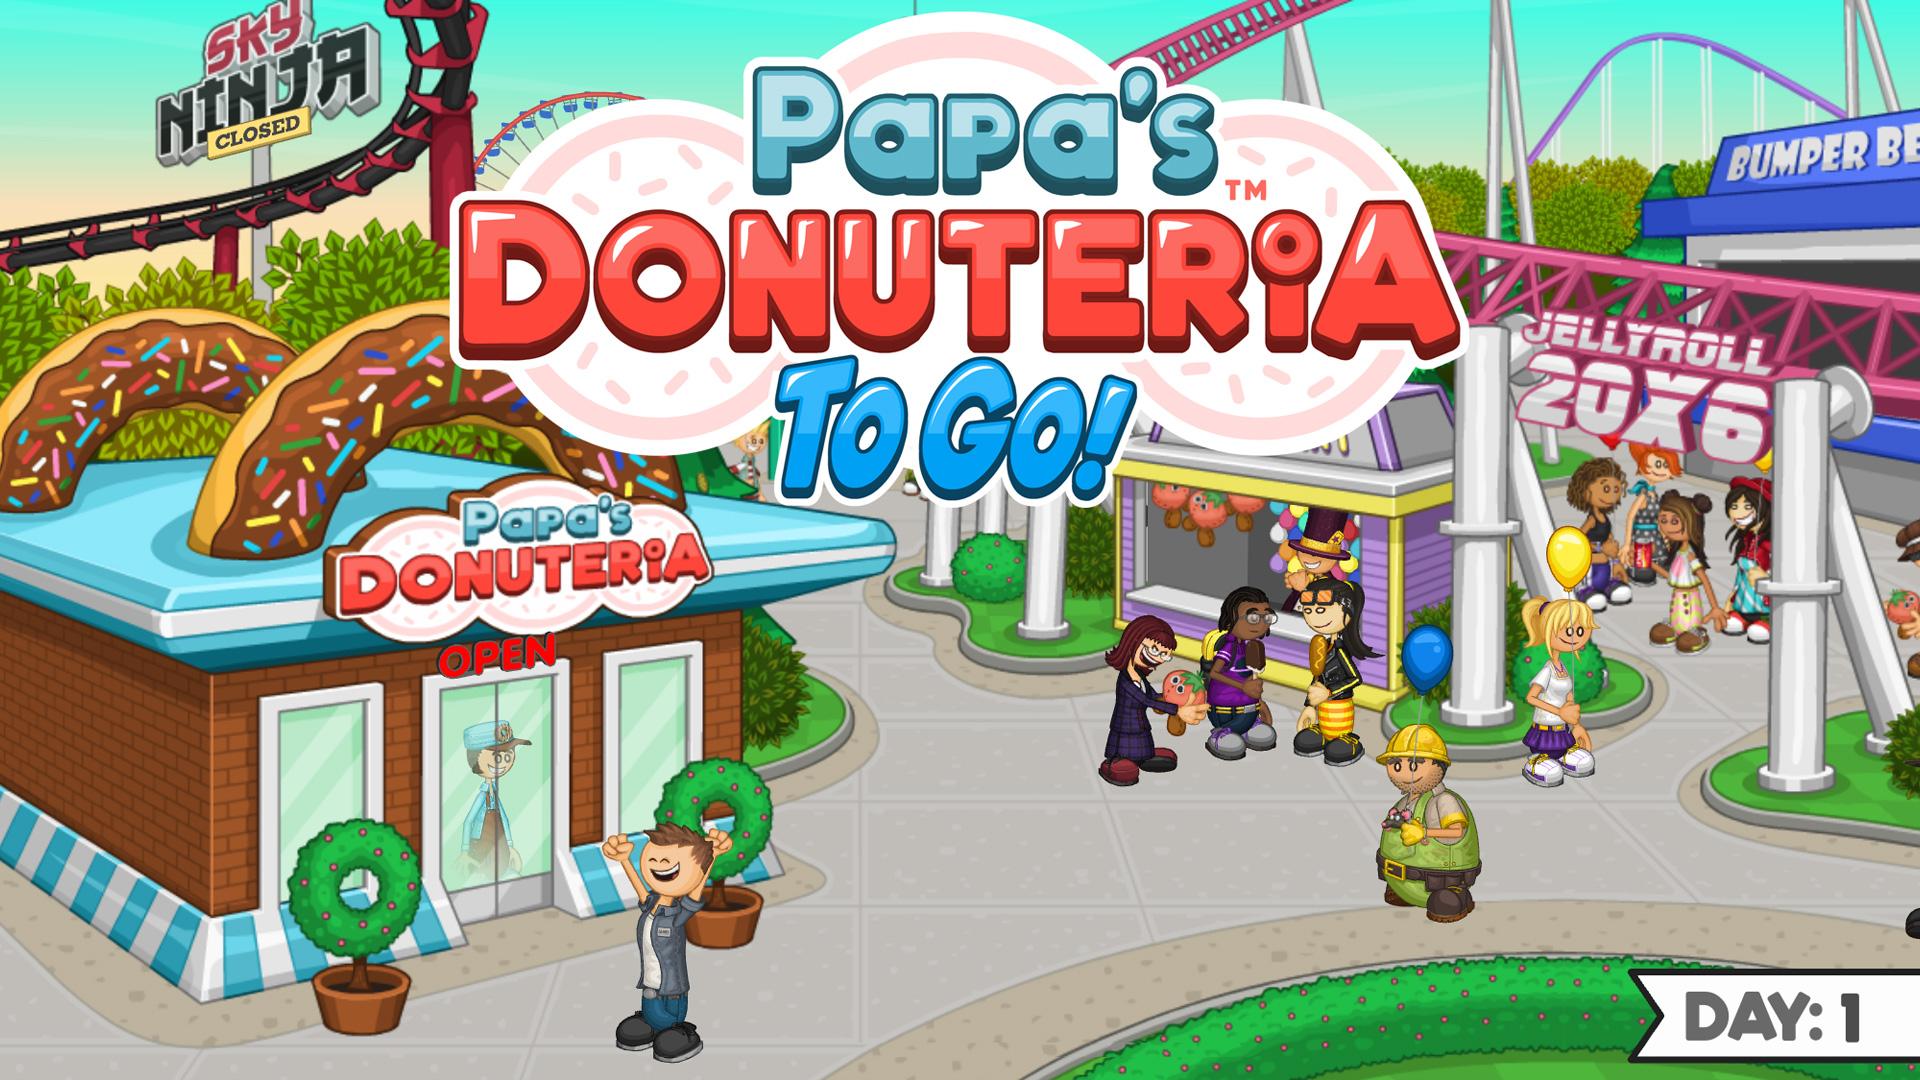 Télécharger Papa's Donuteria To Go! pour Android gratuit.